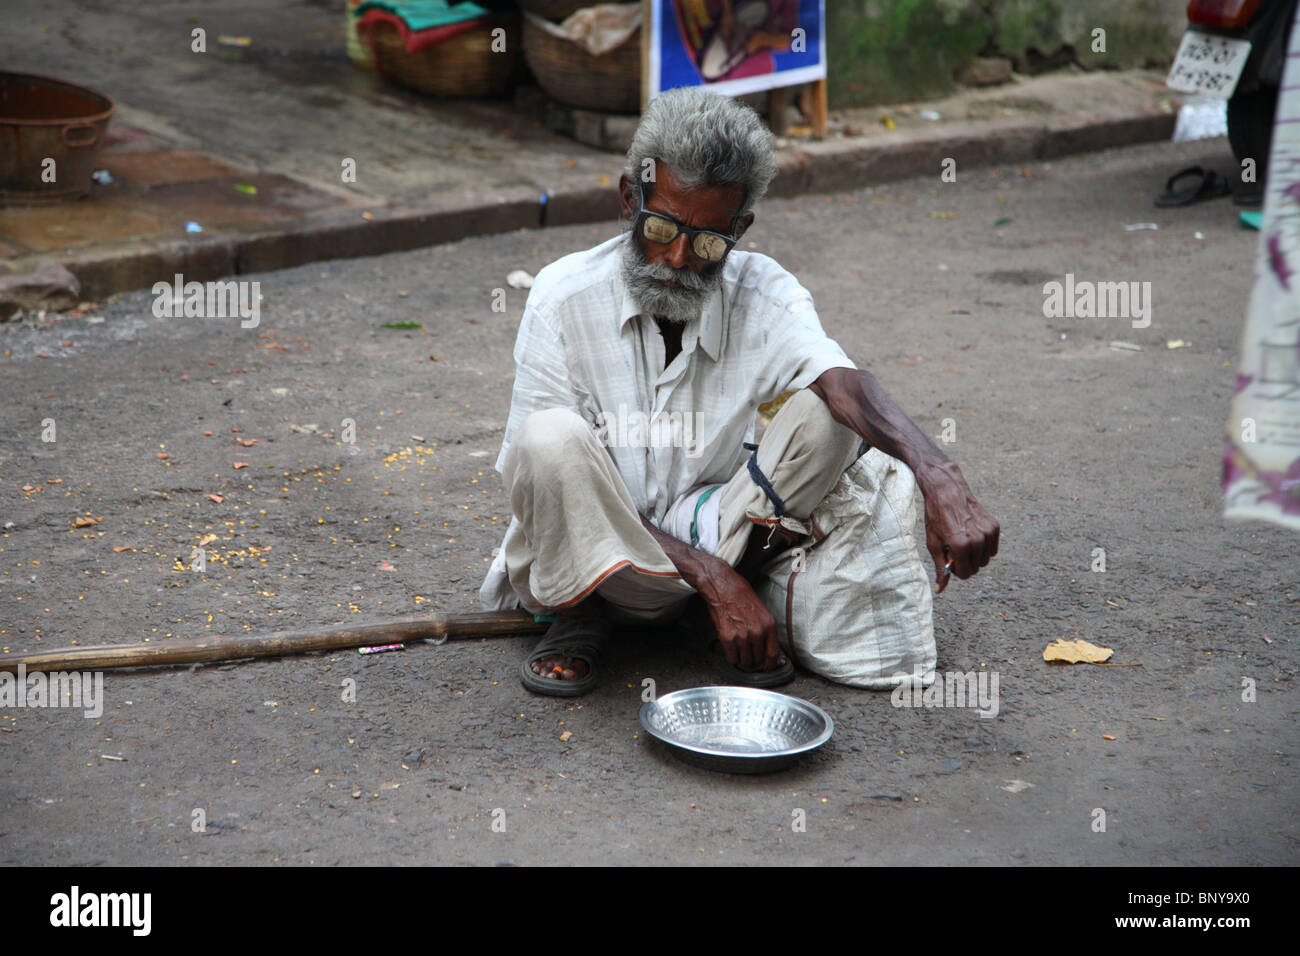 Ein blinder Bettler hocken mit seiner Schale in einer Straße in Kolkata (früher Kalkutta), Indien. Stockfoto